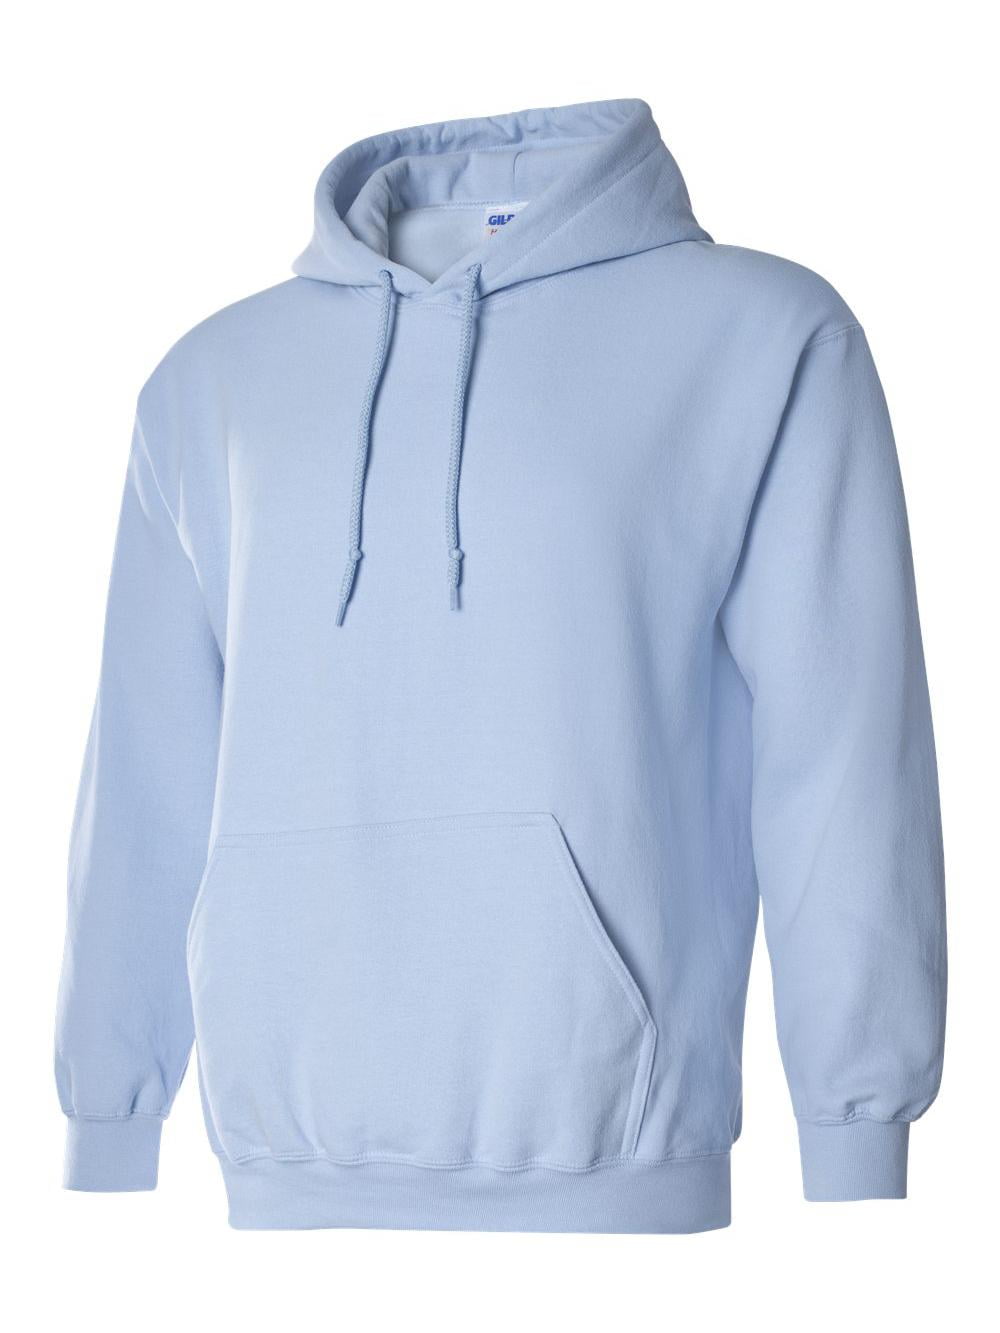 Hooded Sweatshirt Men's Adult Blank Hoodie Heavy Blend 8 oz Indigo Blue 